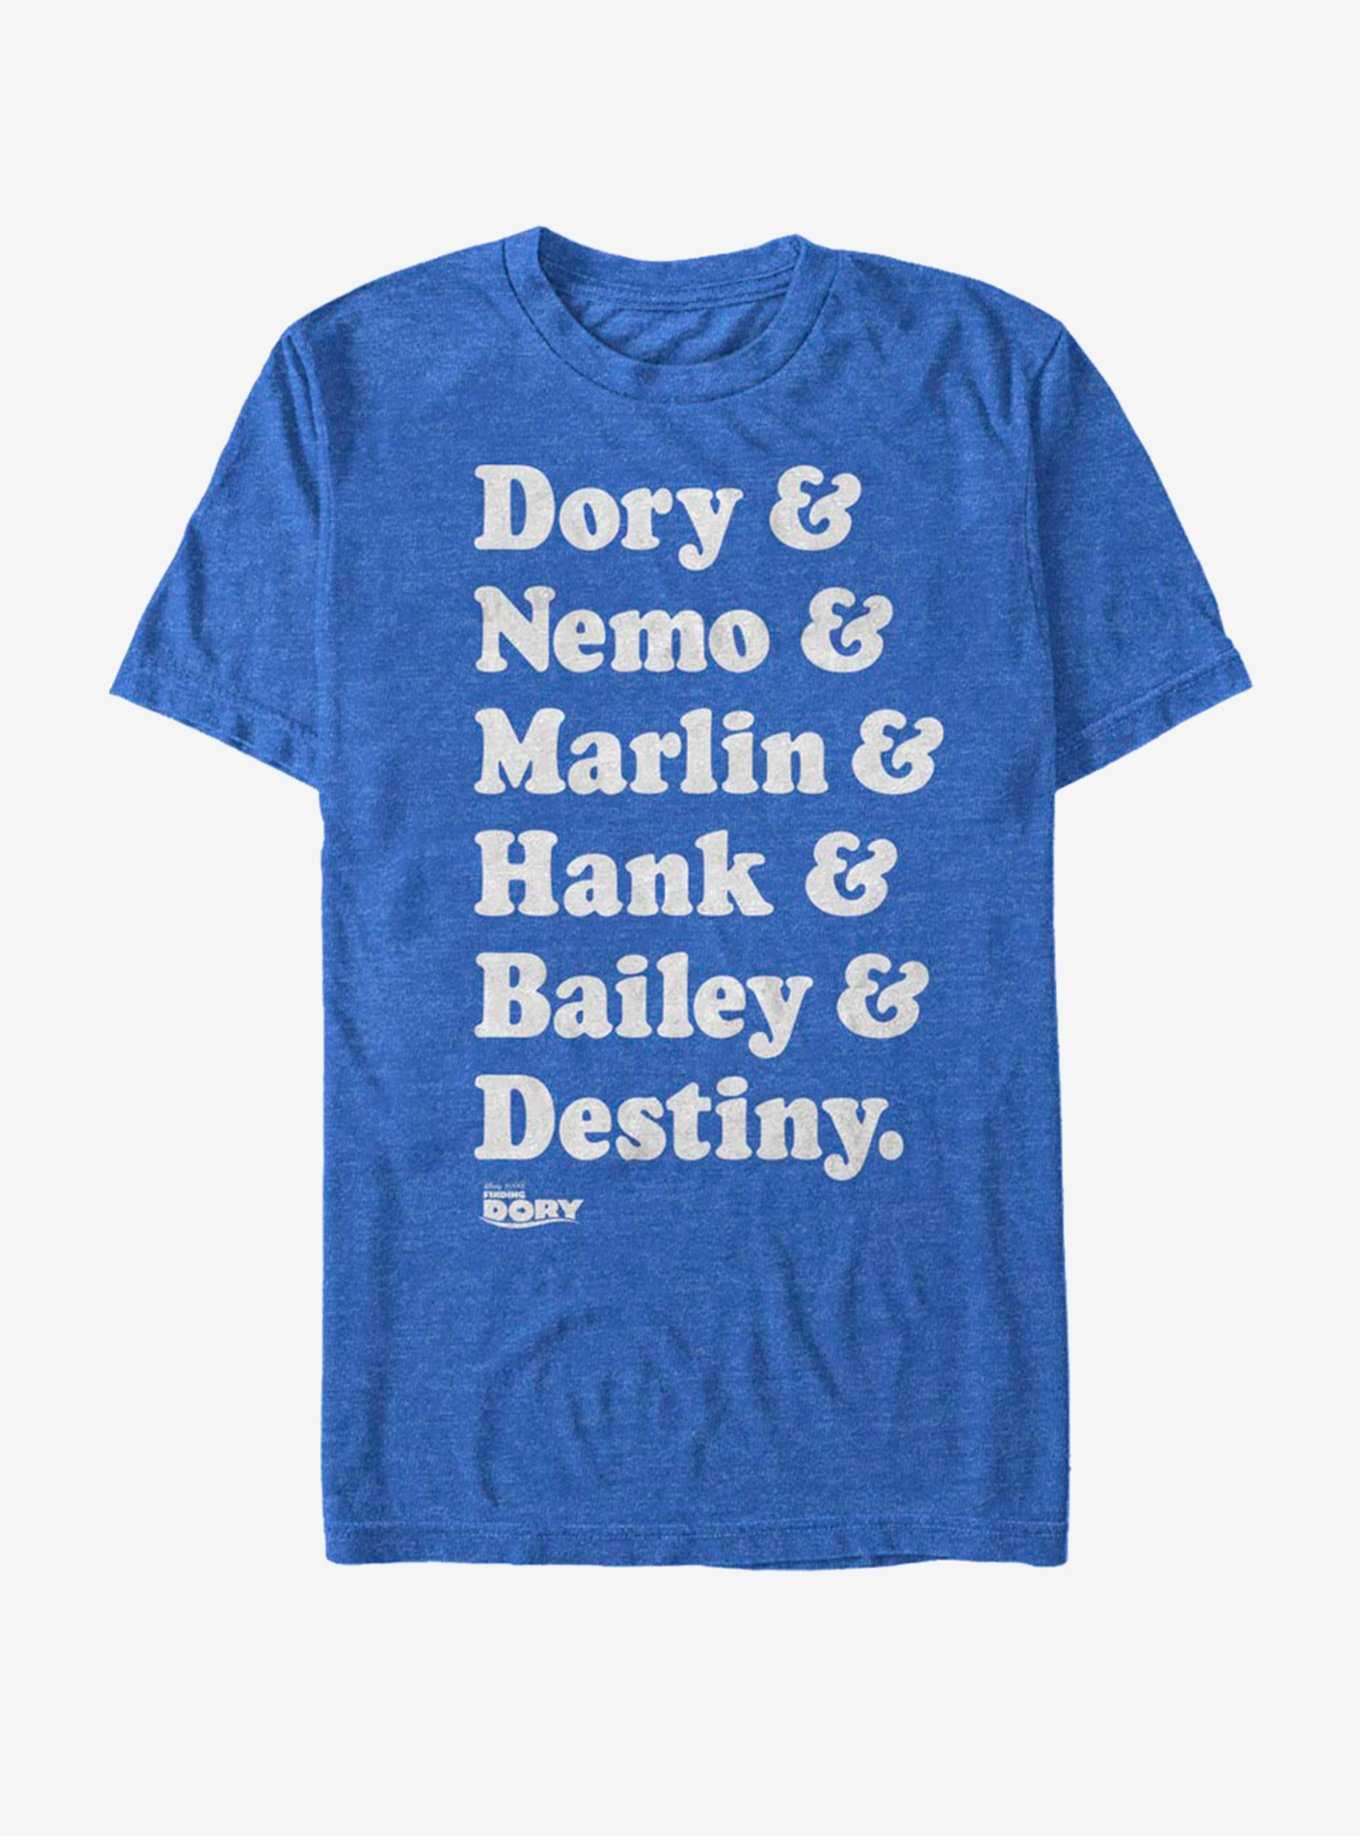 Disney Pixar Finding Dory Roll Call T-Shirt, , hi-res